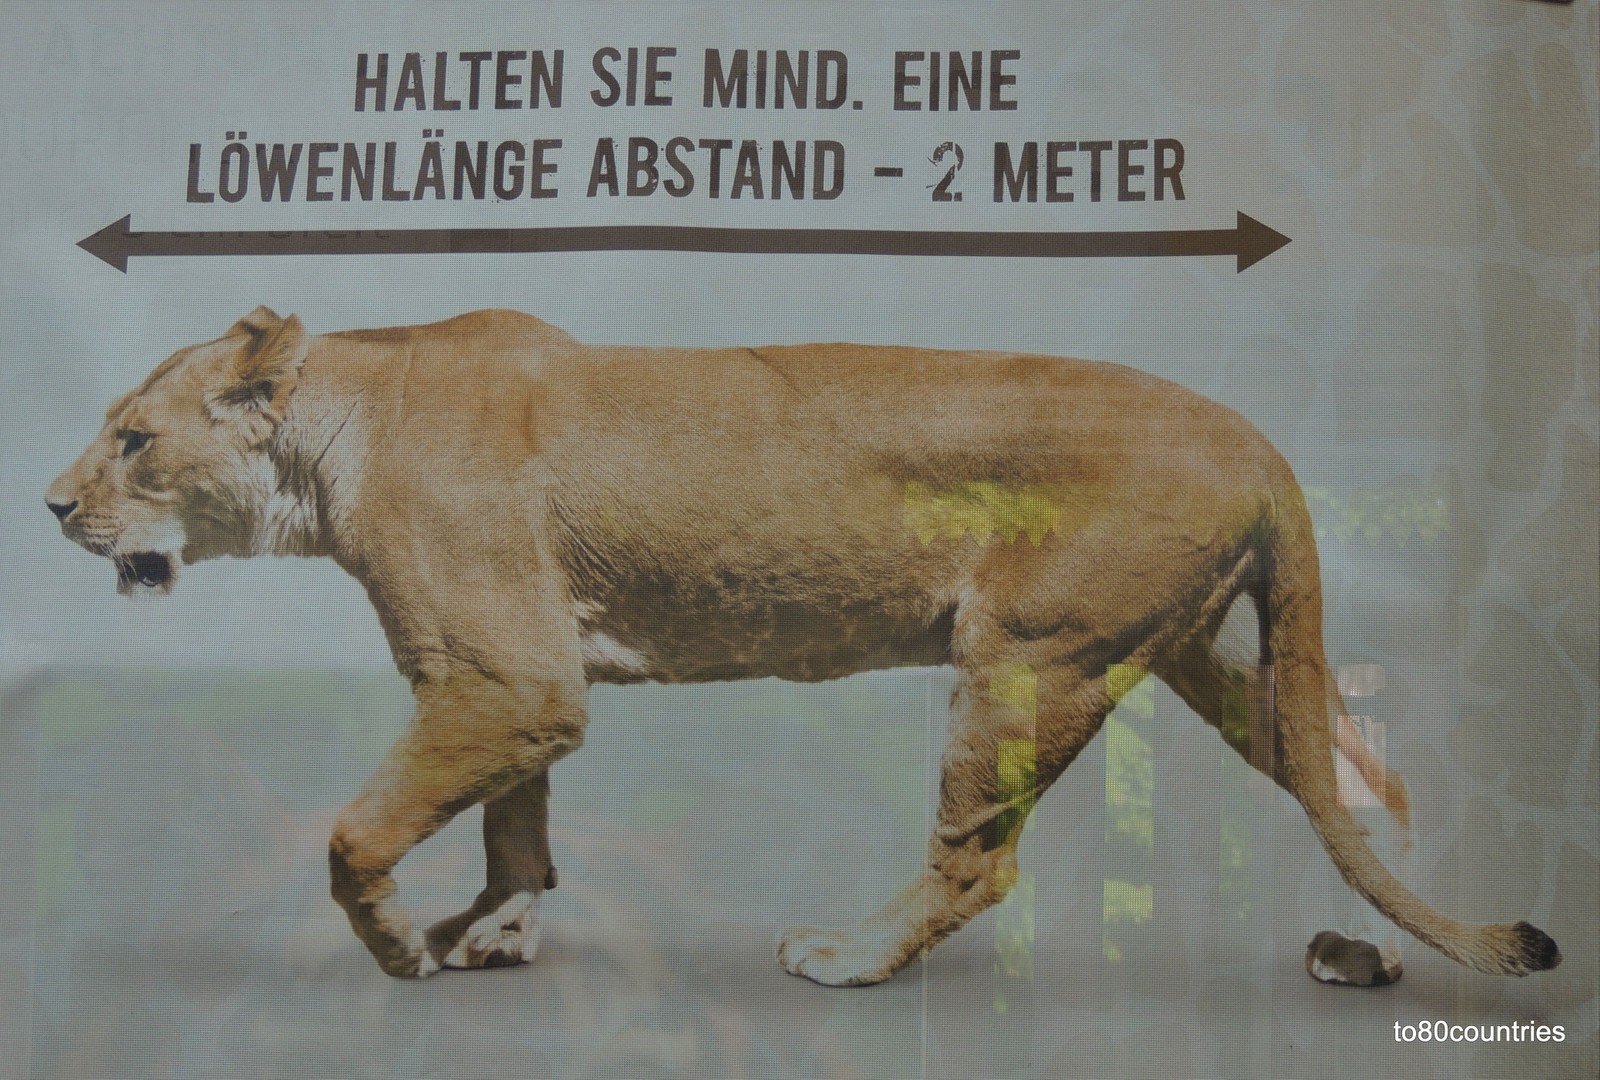 Tierpark Hellabrunn in München